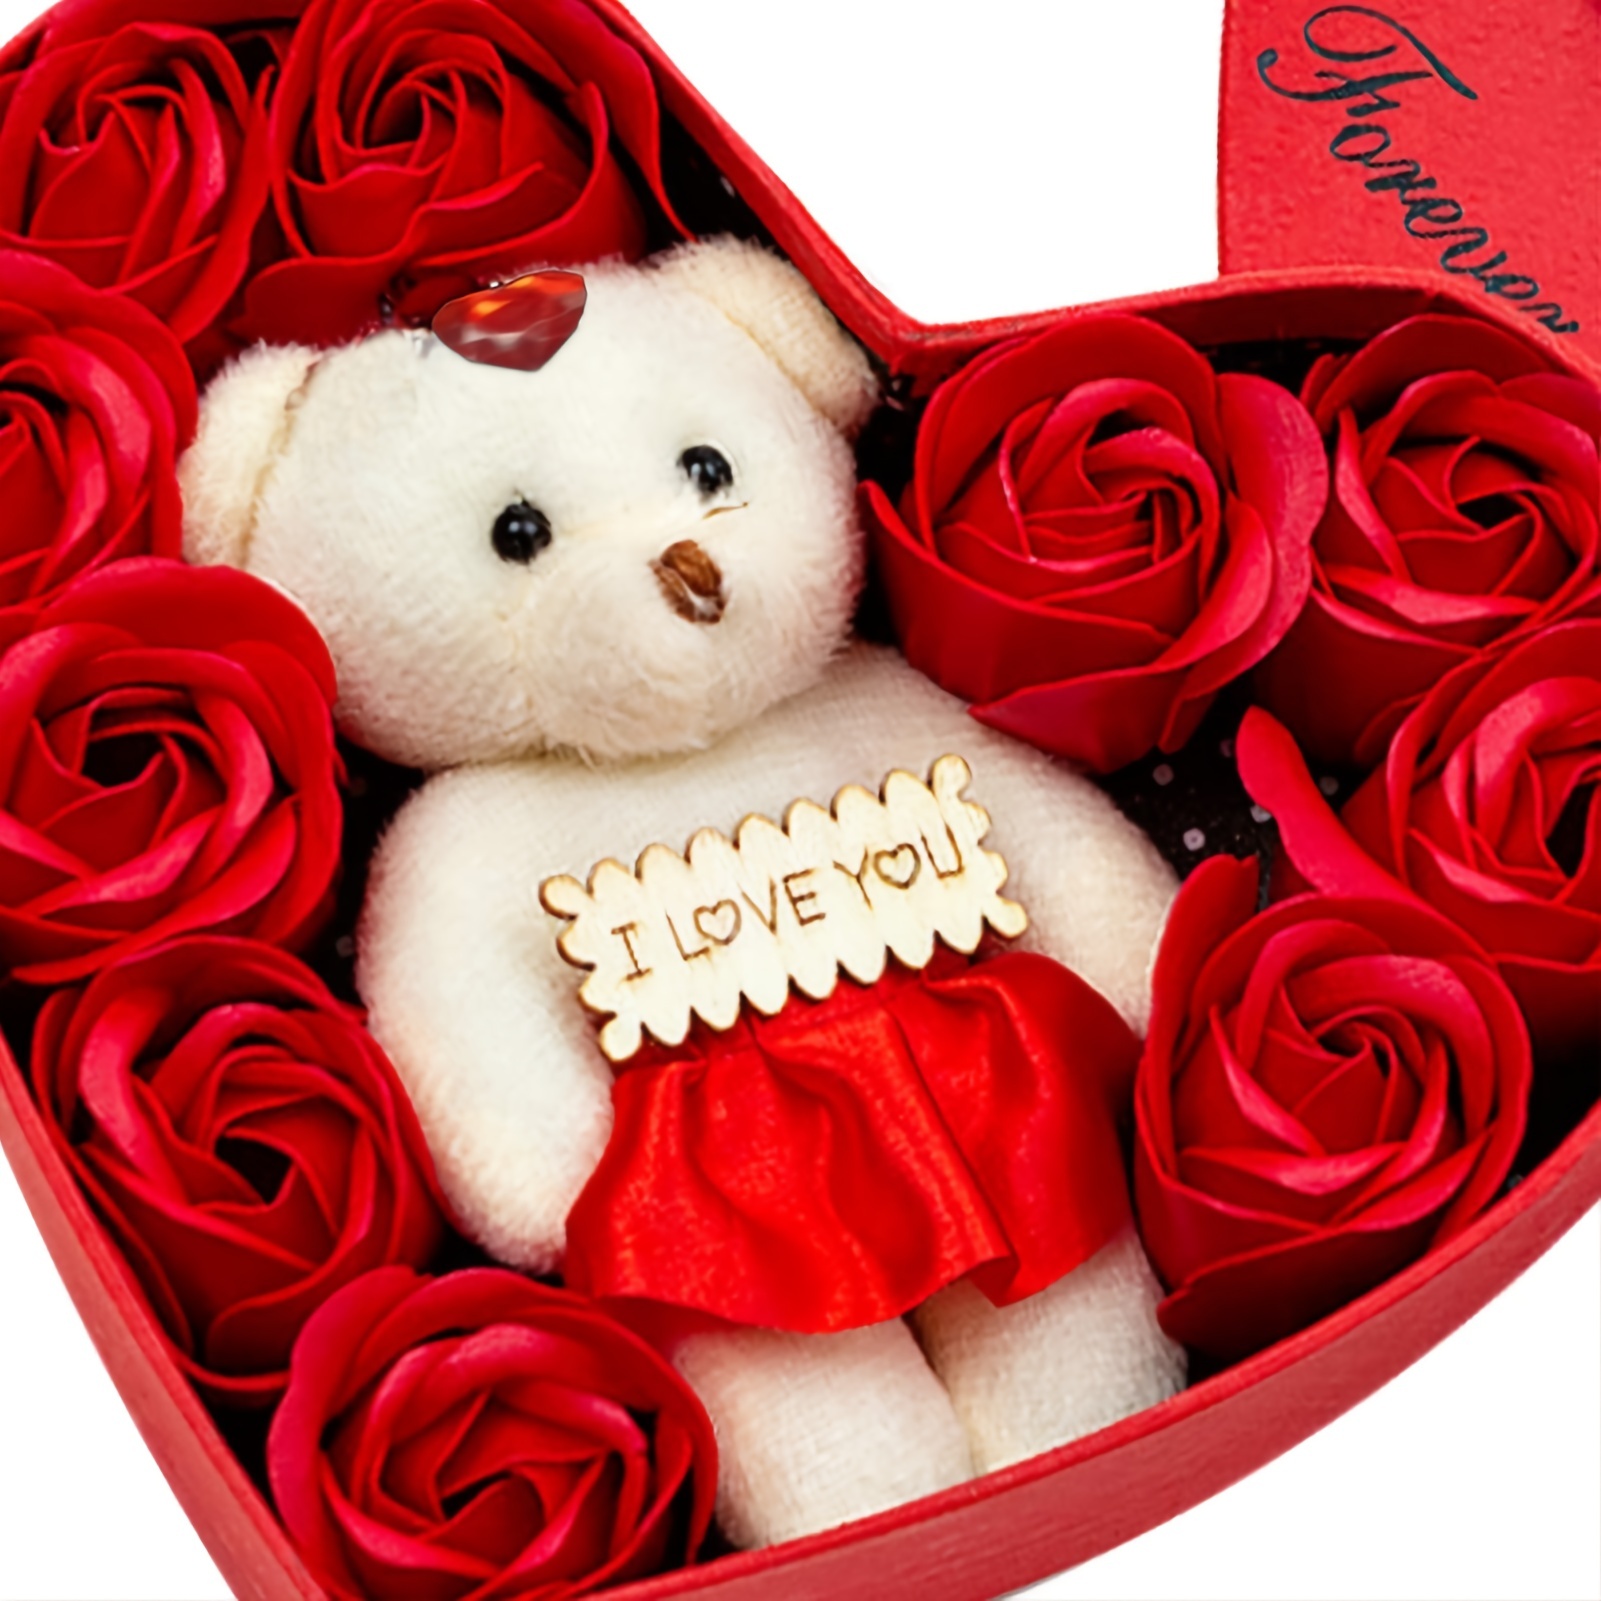 Regalos de San Valentín para ella, regalos de flores para el día de San  Valentín para mamá, mujeres, novia, regalos de cumpleaños para mujeres